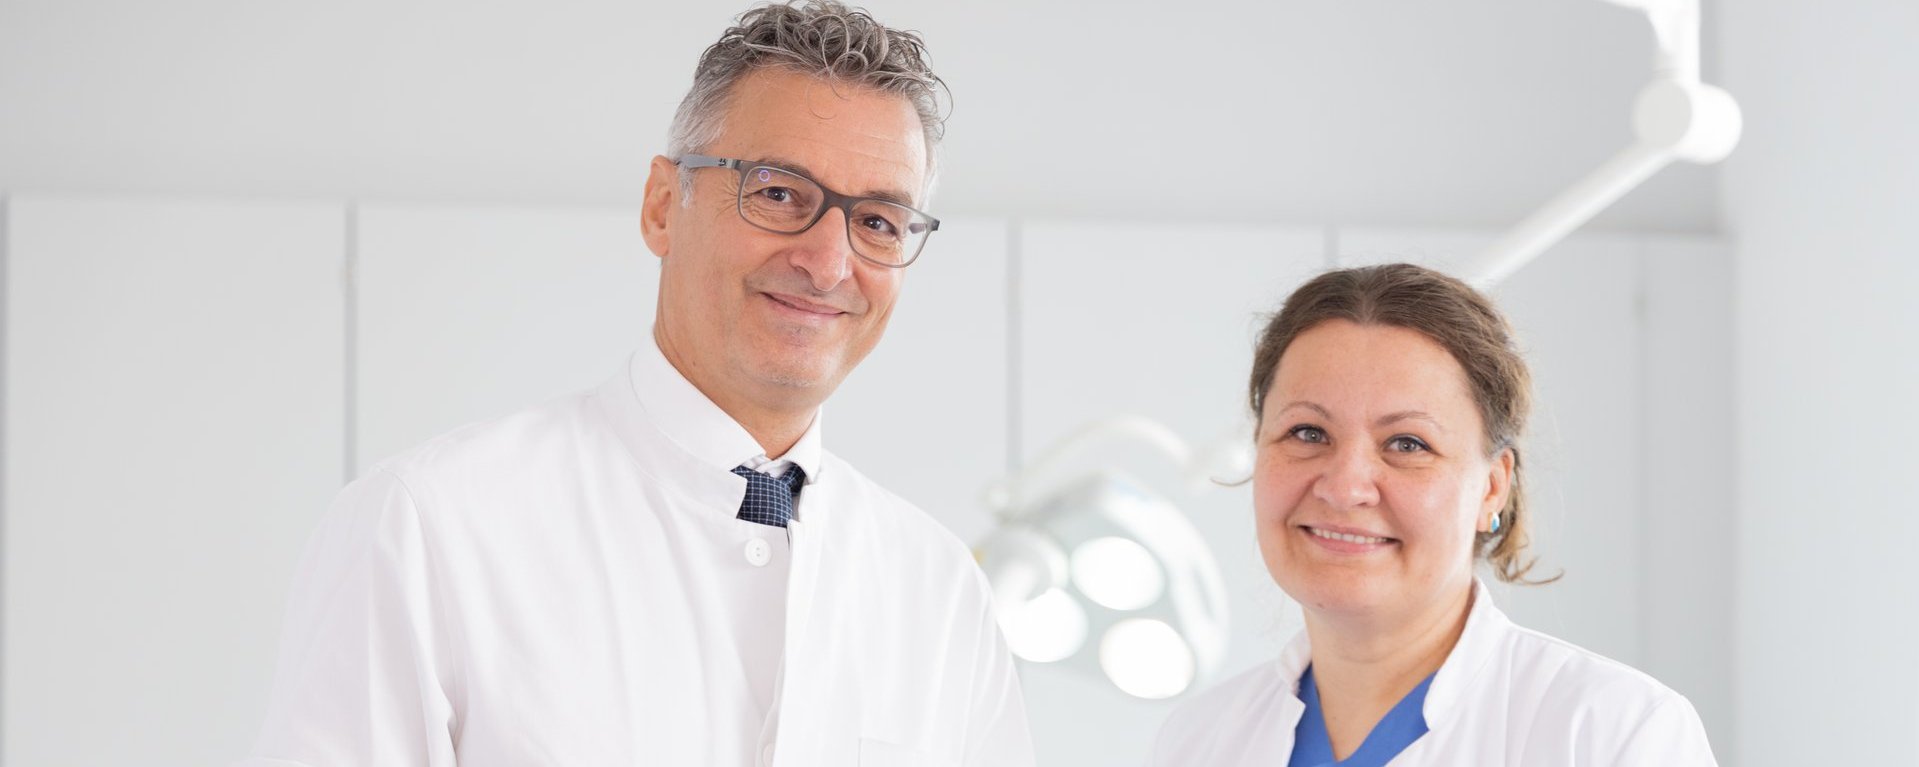 Links steht ein Arzt mit grauem Haar und Brille, der einen Ärztin rechts von ihm etwas auf einem Blatt Papier zeigt. Beide blicken in die Kamera und lächeln.